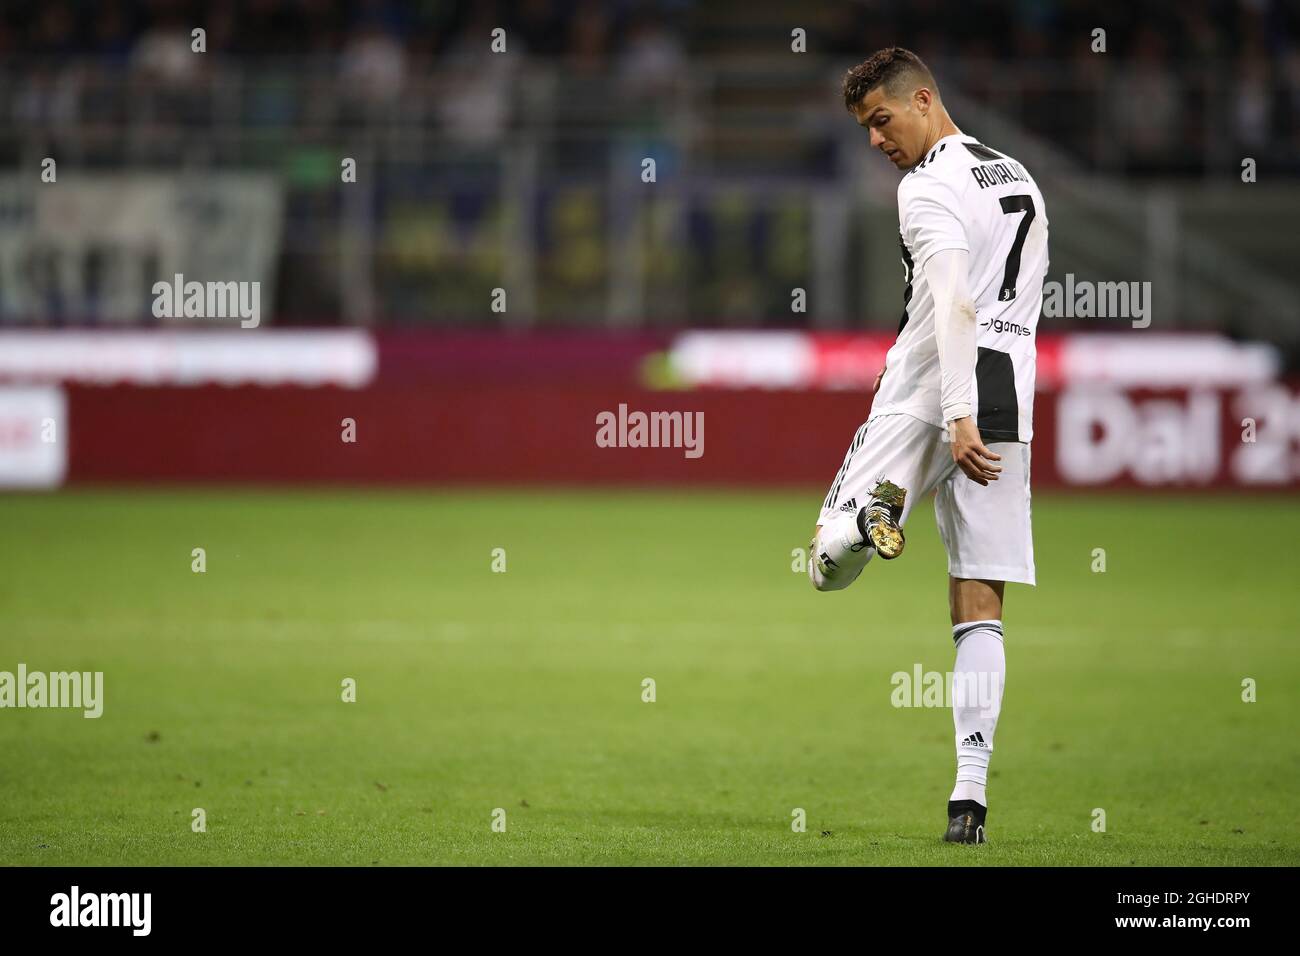 Cristiano Ronaldo de Juventus enlève du sol de ses crampons pendant le  match de la série A à Giuseppe Meazza, Milan. Date de la photo : 27 avril  2019. Le crédit photo